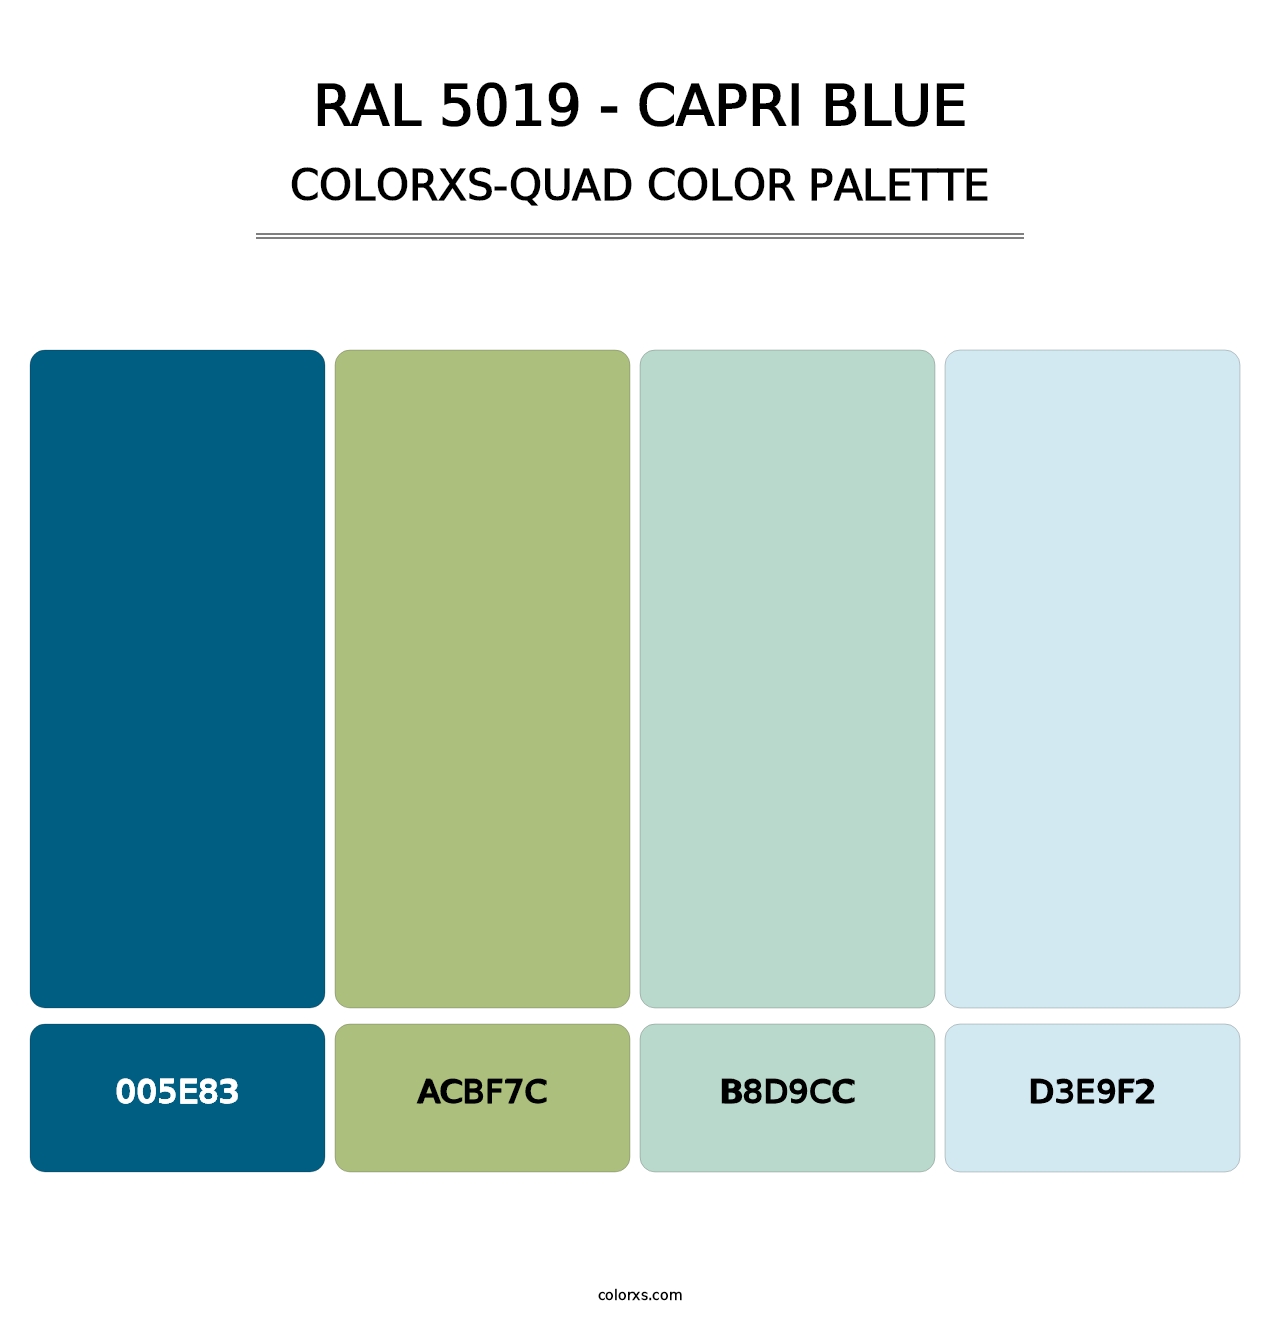 RAL 5019 - Capri Blue - Colorxs Quad Palette